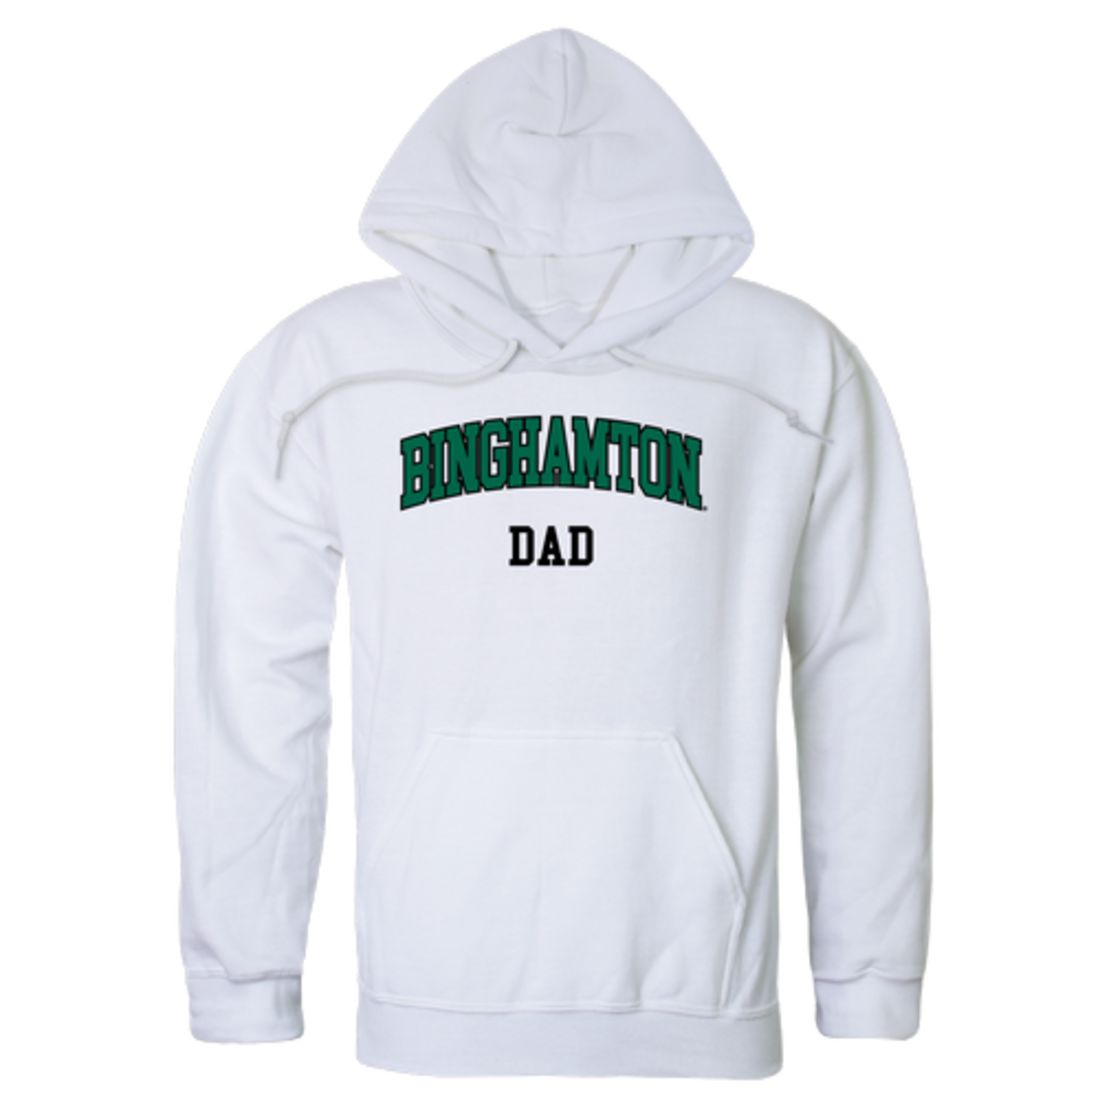 SUNY Binghamton University Bearcats Dad Fleece Hoodie Sweatshirts Heather Charcoal-Campus-Wardrobe